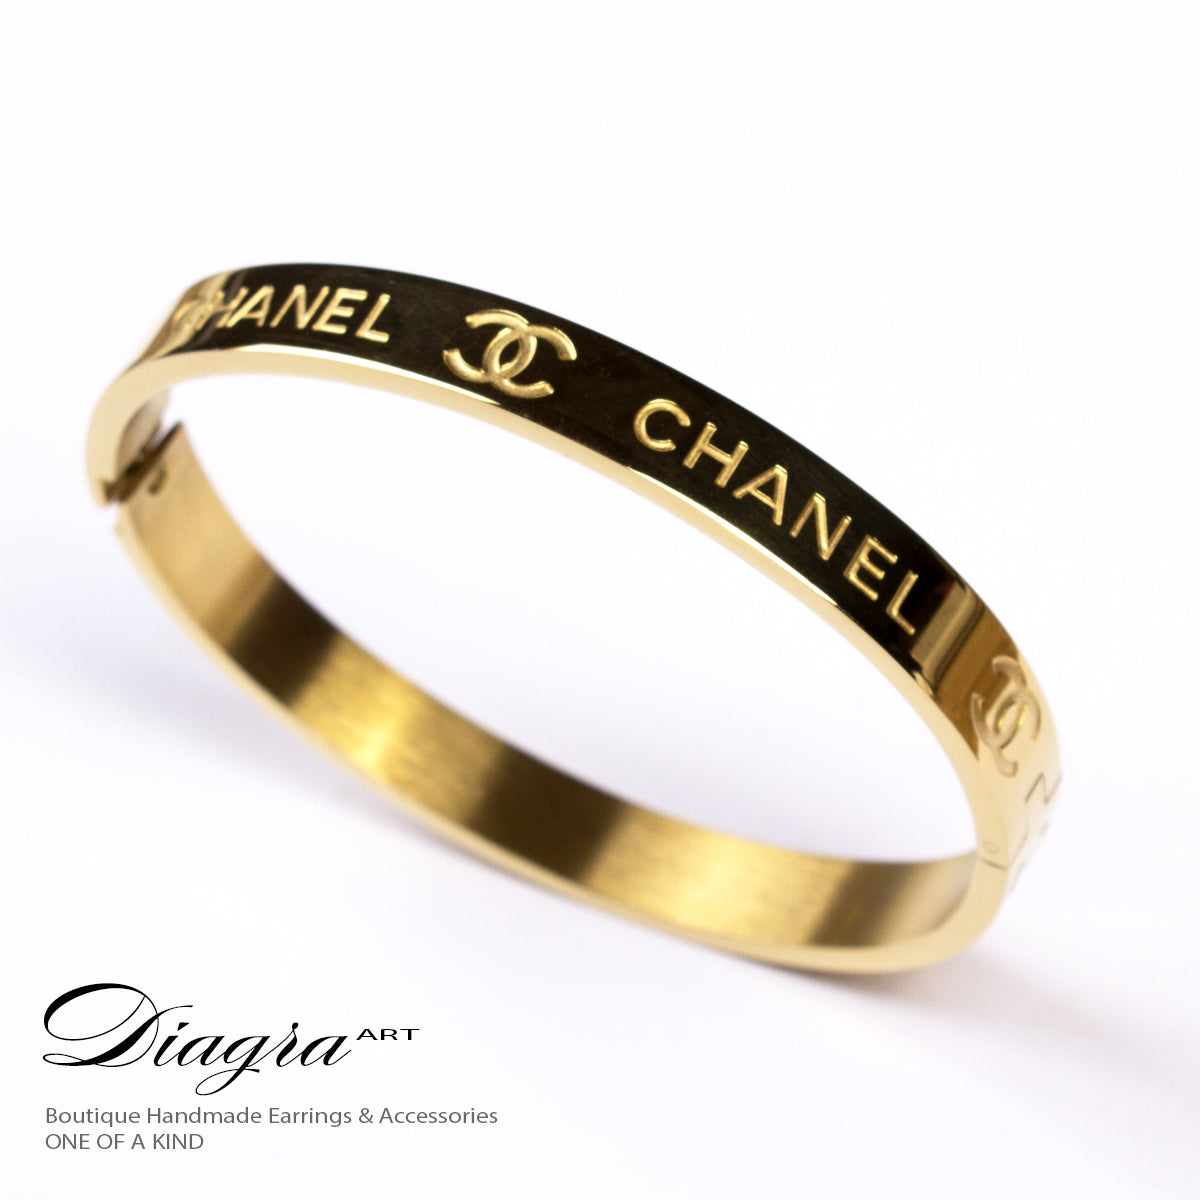 Chanel bracelets designer inspired one of a kind – Diagra